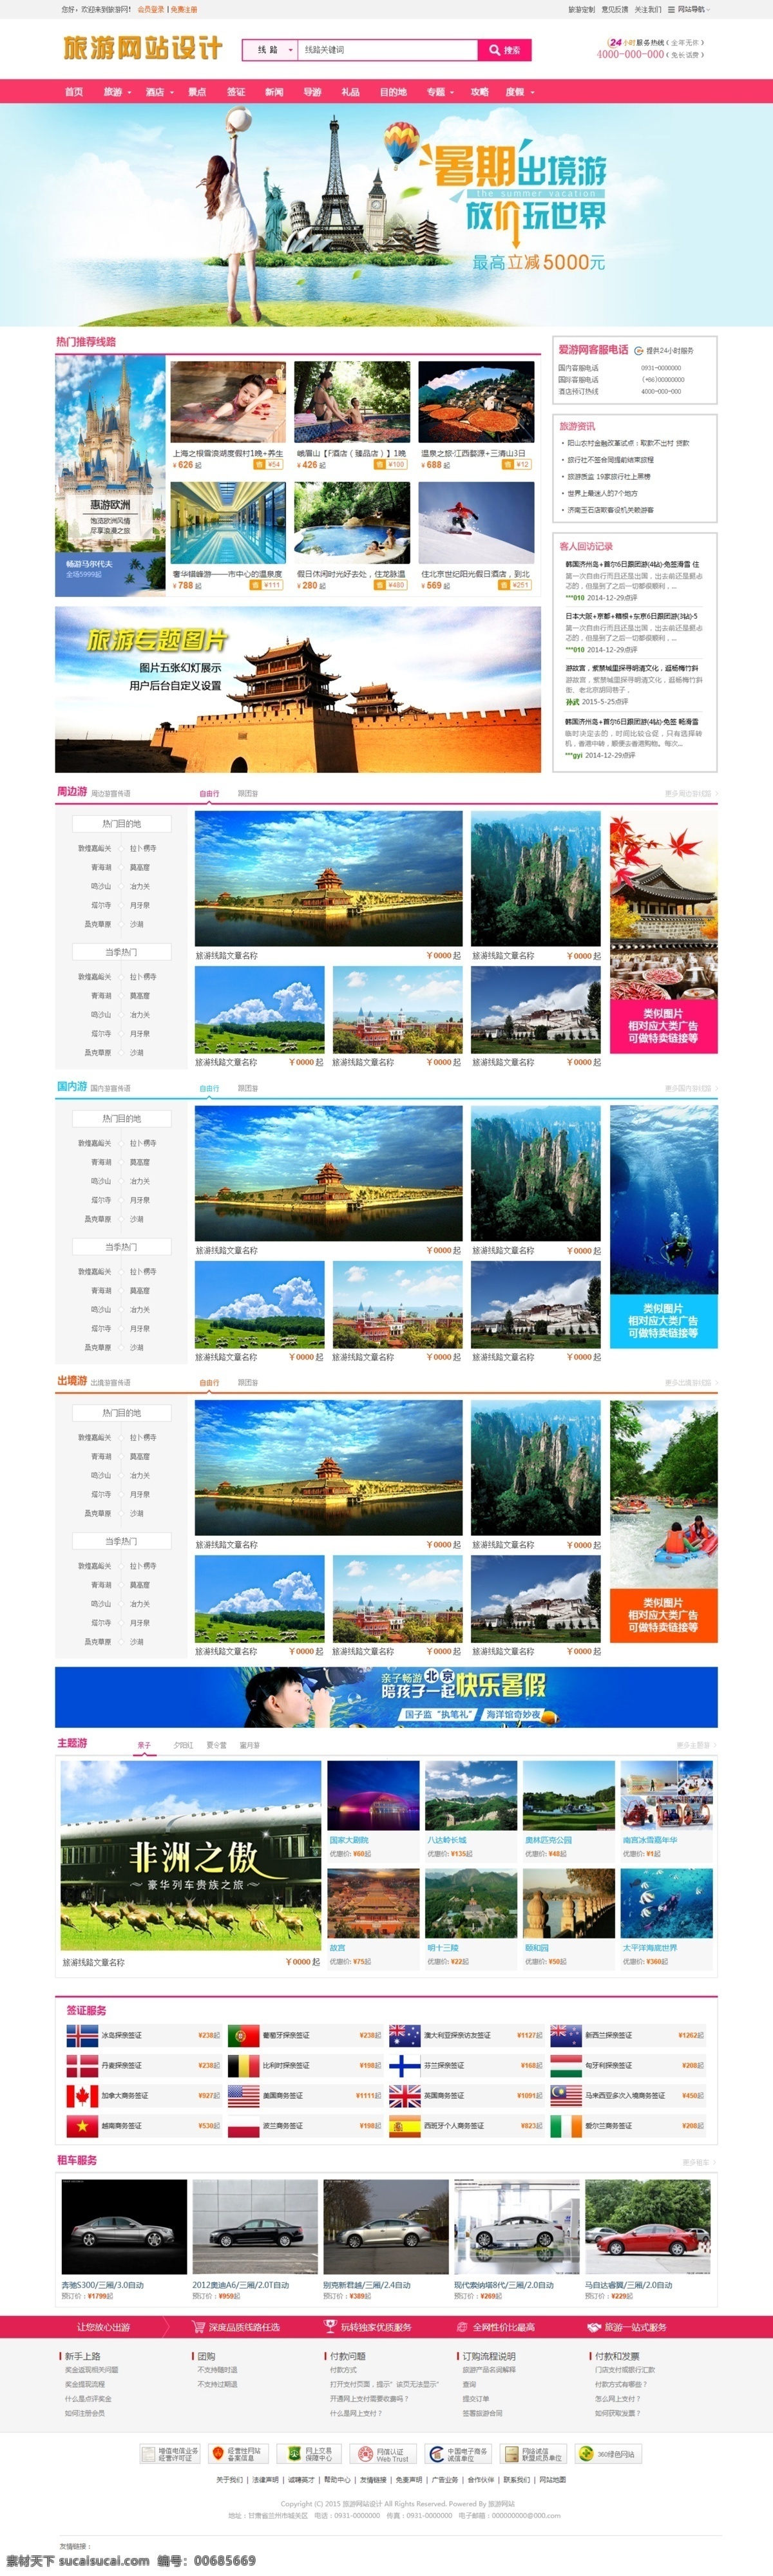 旅游 门户网站 旅游网站设计 旅游门户网站 网站设计 旅游门户设计 旅游网站效果 web 界面设计 白色